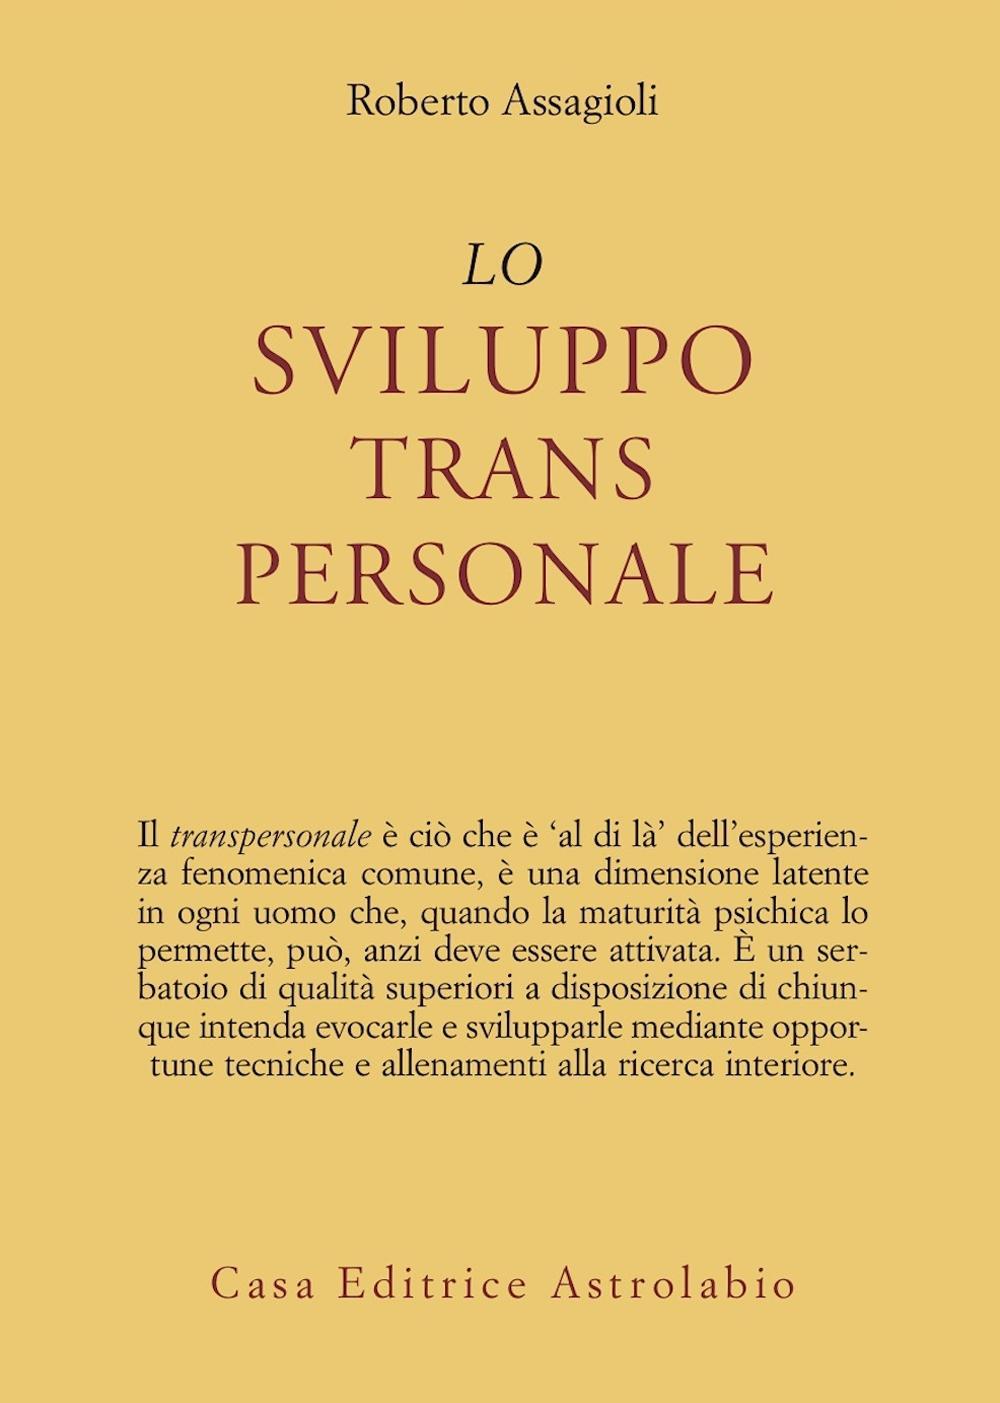 Könyv sviluppo transpersonale Roberto Assagioli